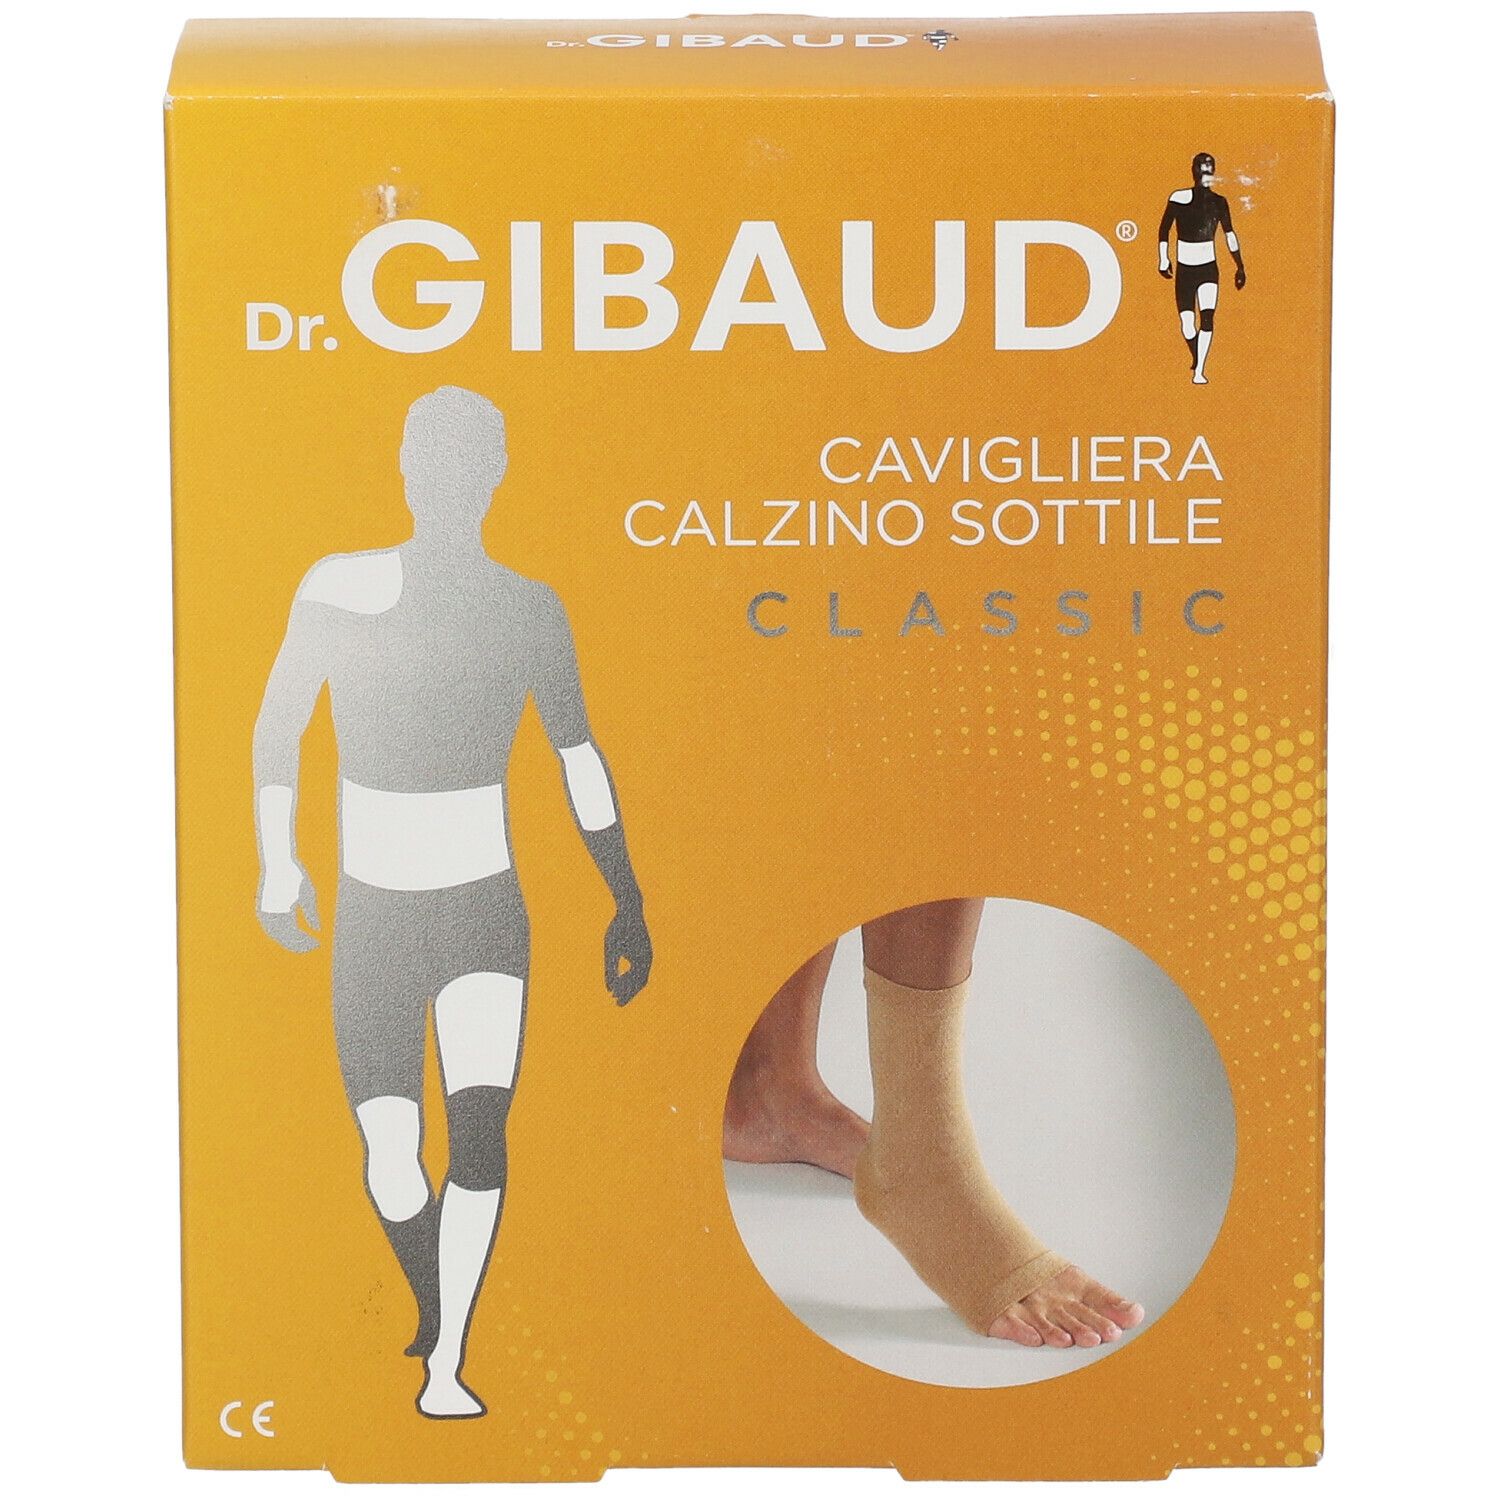 Dr. GIBAUD® Cavigliera Calzino Sottile Taglia 3